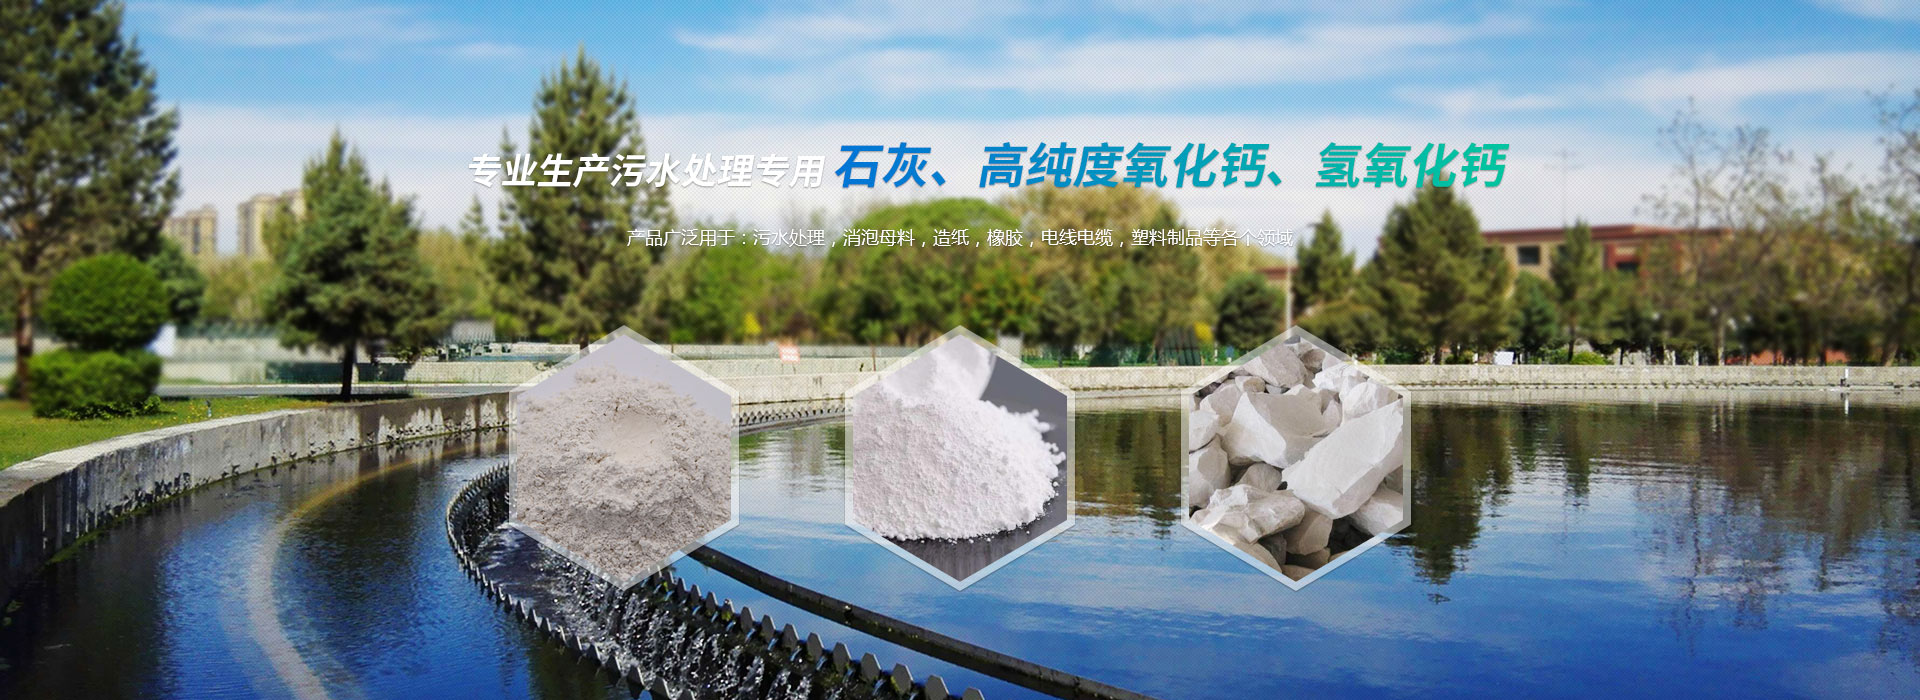 淄博天舟化工有限公司，專業生產污水處理專用石灰、高品質氫氧化鈣、氫氧化鈣等化工產品。